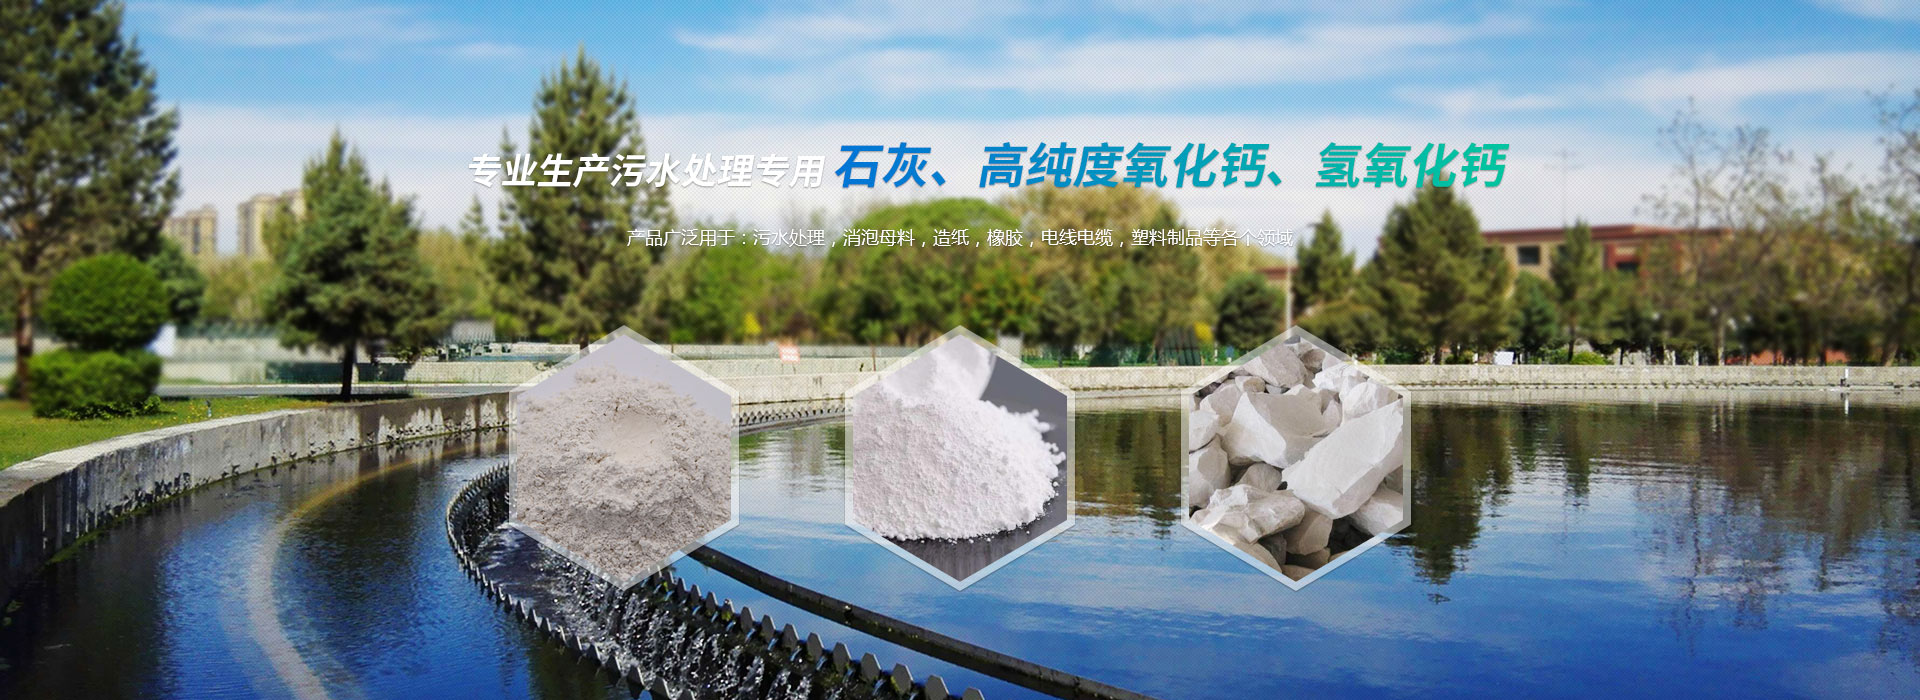 淄博天舟化工有限公司，專業生產污水處理專用石灰、高品質氫氧化鈣、氫氧化鈣等化工產品。